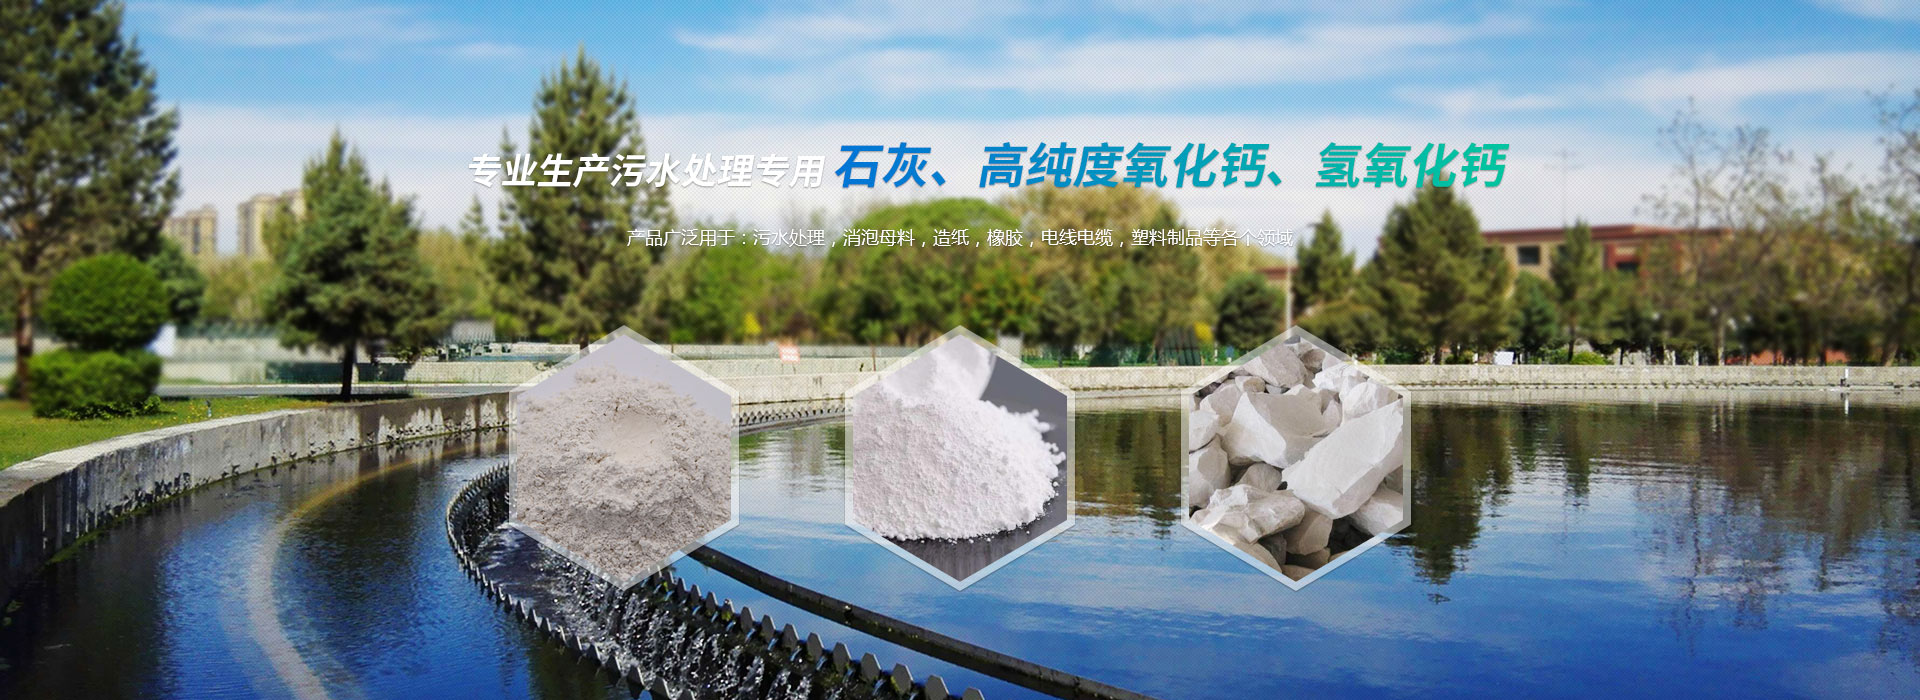 淄博天舟化工有限公司，專業生產污水處理專用石灰、高品質氫氧化鈣、氫氧化鈣等化工產品。